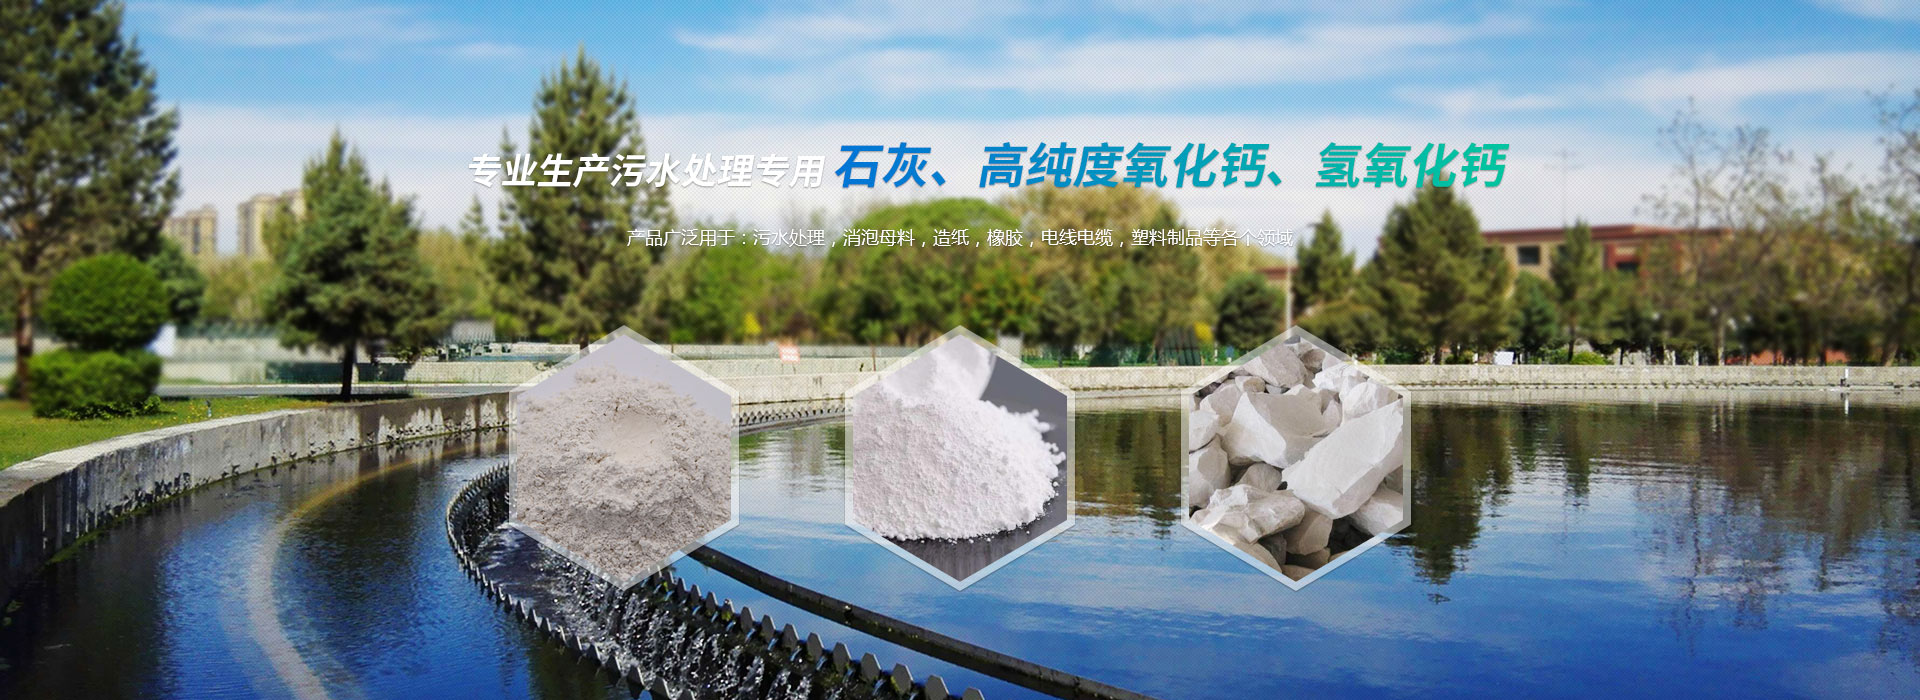 淄博天舟化工有限公司，專業生產污水處理專用石灰、高品質氫氧化鈣、氫氧化鈣等化工產品。